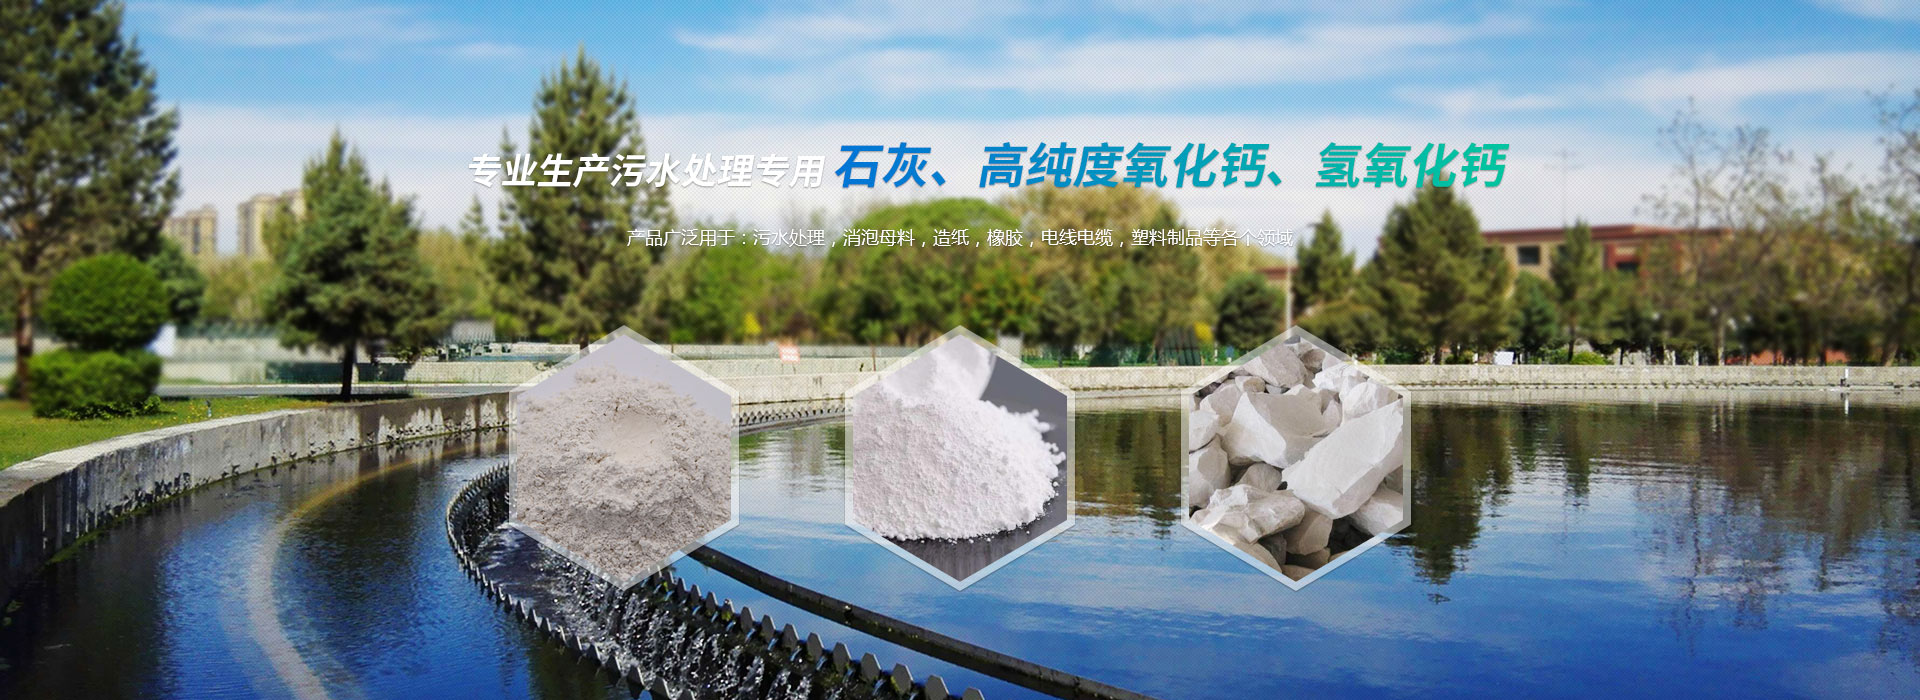 淄博天舟化工有限公司，專業生產污水處理專用石灰、高品質氫氧化鈣、氫氧化鈣等化工產品。